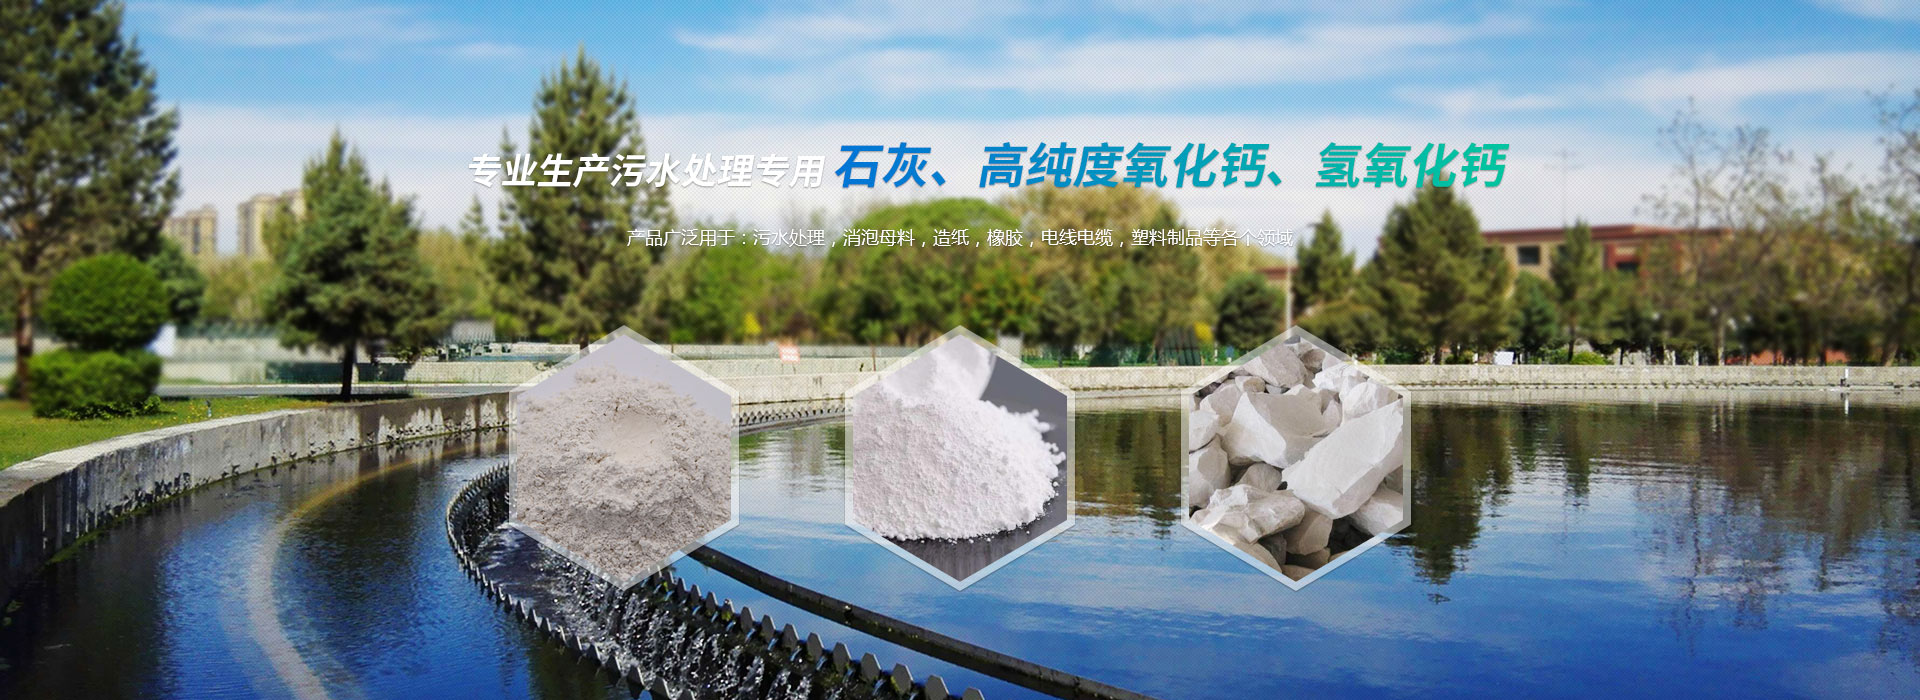 淄博天舟化工有限公司，專業生產污水處理專用石灰、高品質氫氧化鈣、氫氧化鈣等化工產品。